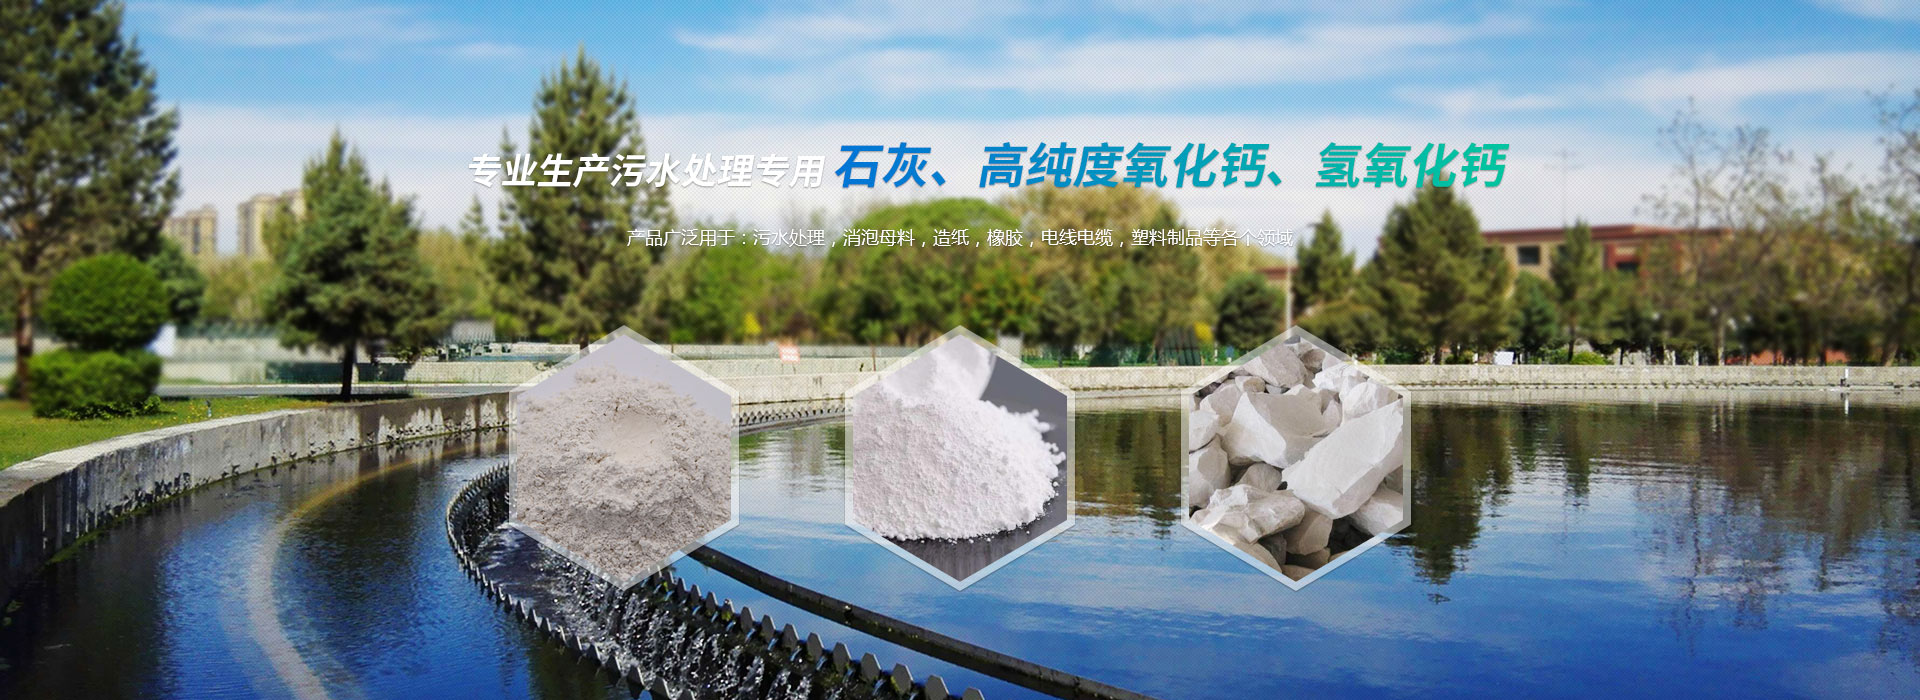 淄博天舟化工有限公司，專業生產污水處理專用石灰、高品質氫氧化鈣、氫氧化鈣等化工產品。